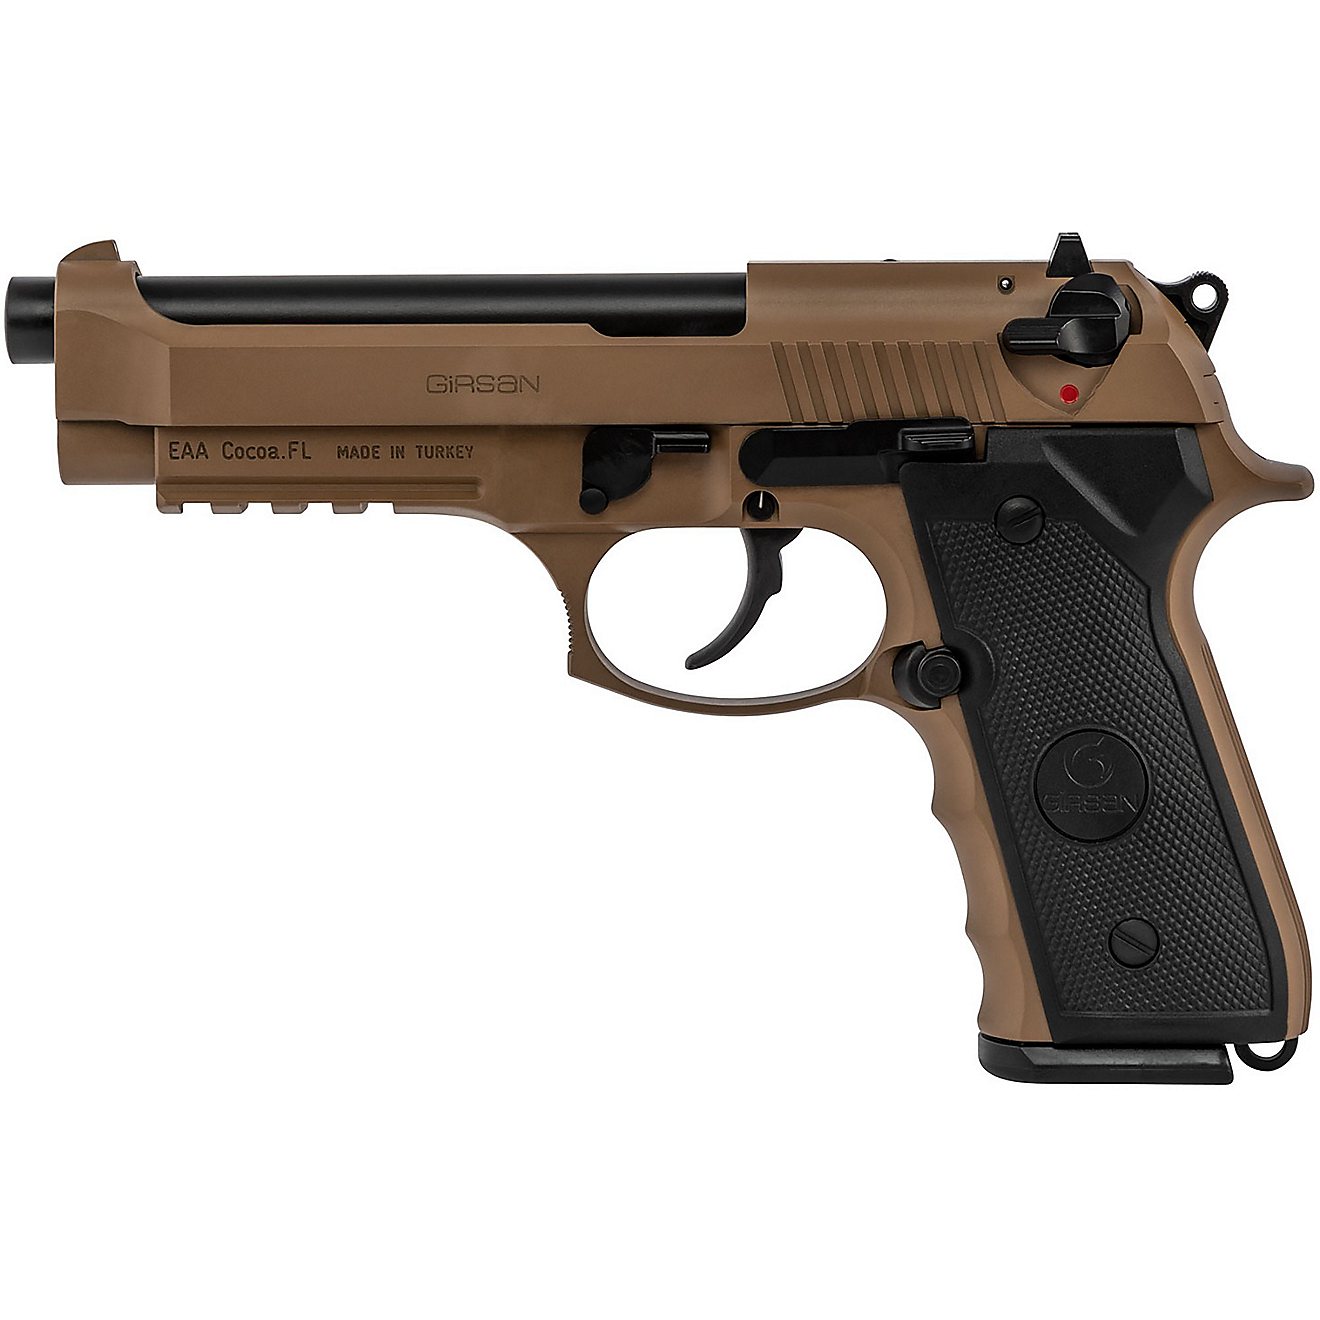 EAA Corp Girsan Regard MC 9mm Luger Pistol                                                                                       - view number 2